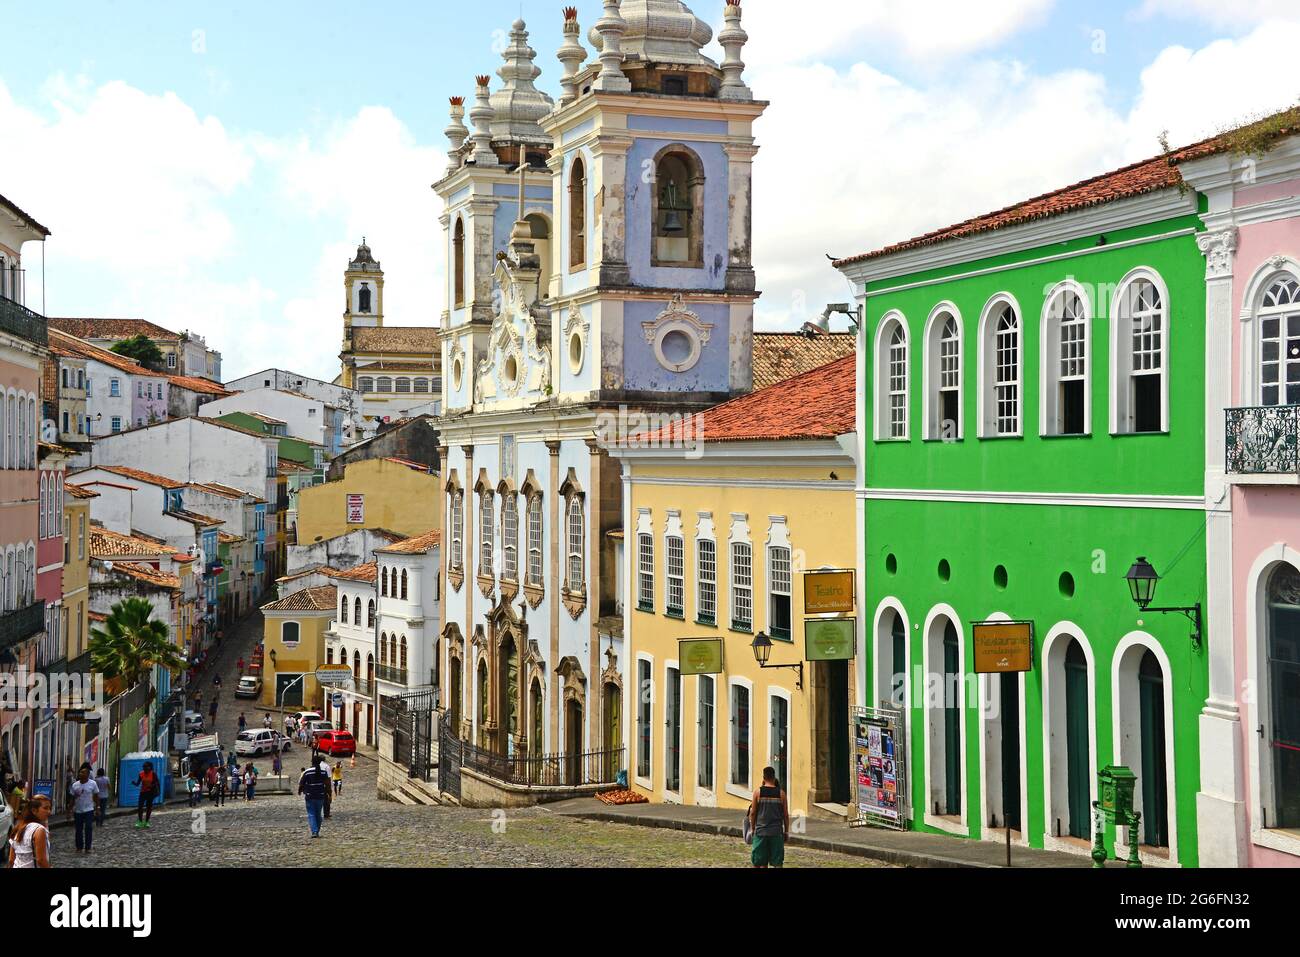 Pelourinho quarter. Salvador de Bahia, Brazil. Stock Photo